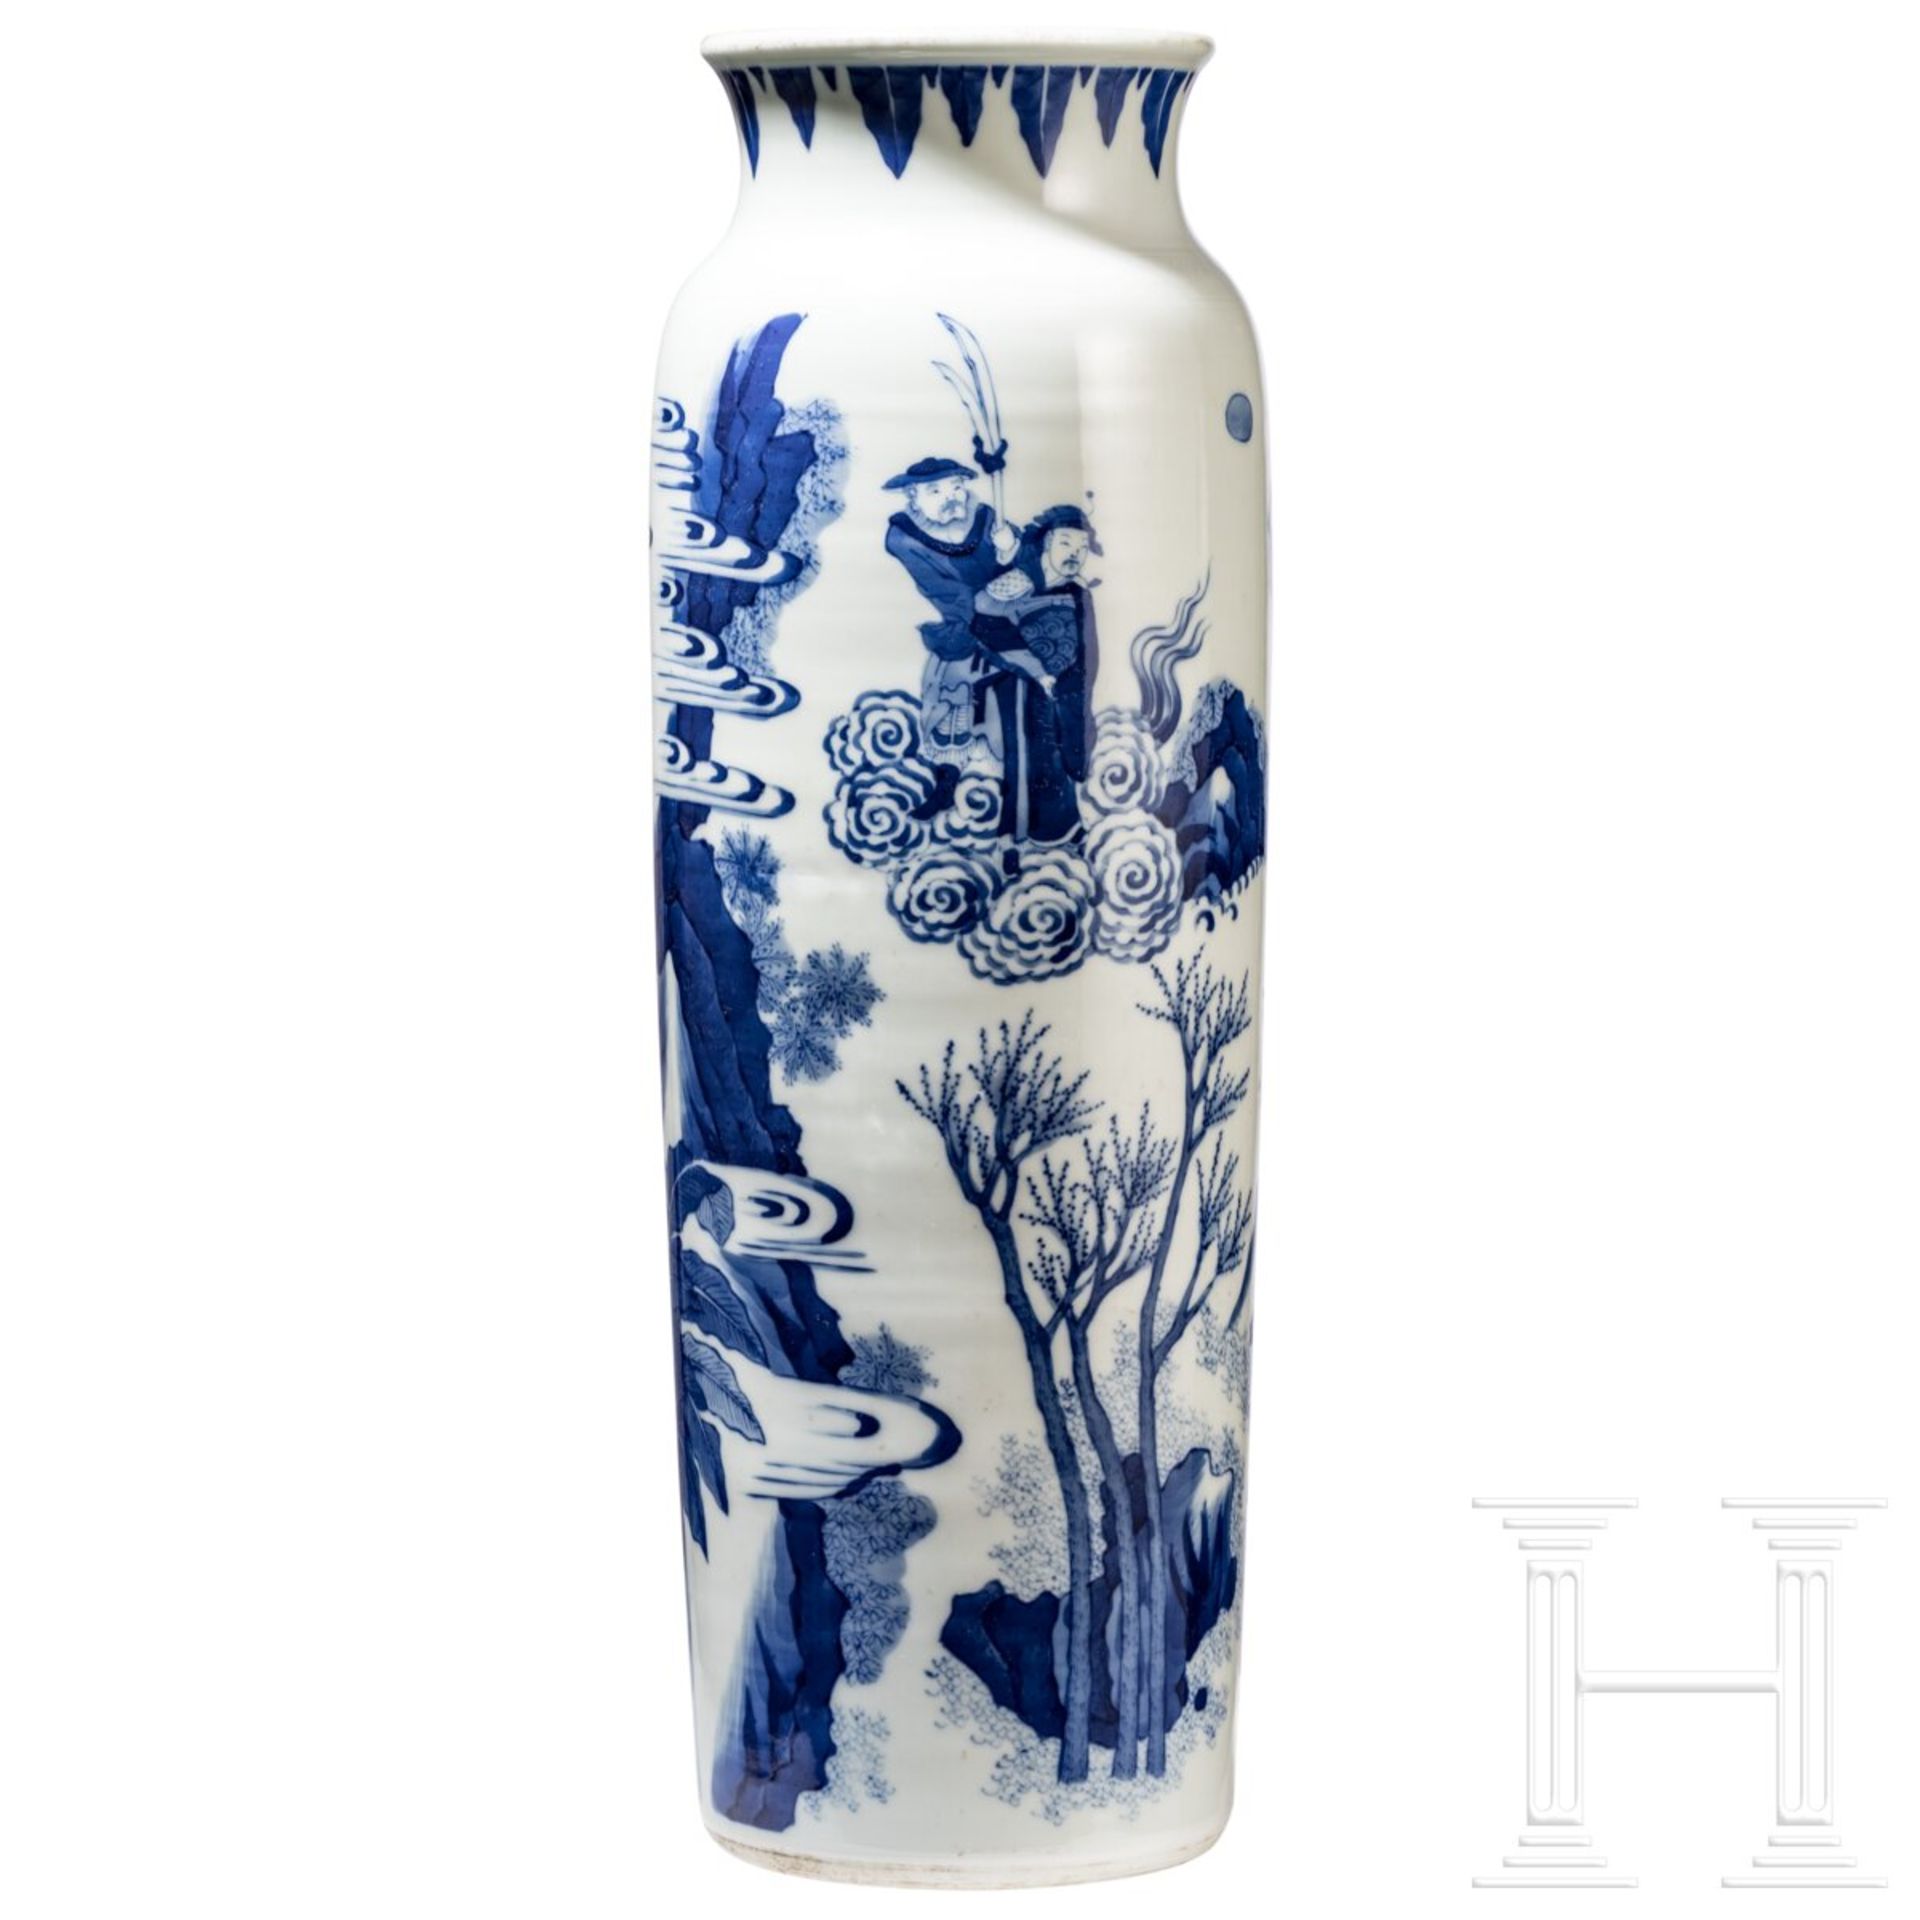 Große blaue-weiße Vase mit Soldatenszene, China, wohl Kangxi-Periode (18. Jhdt.)